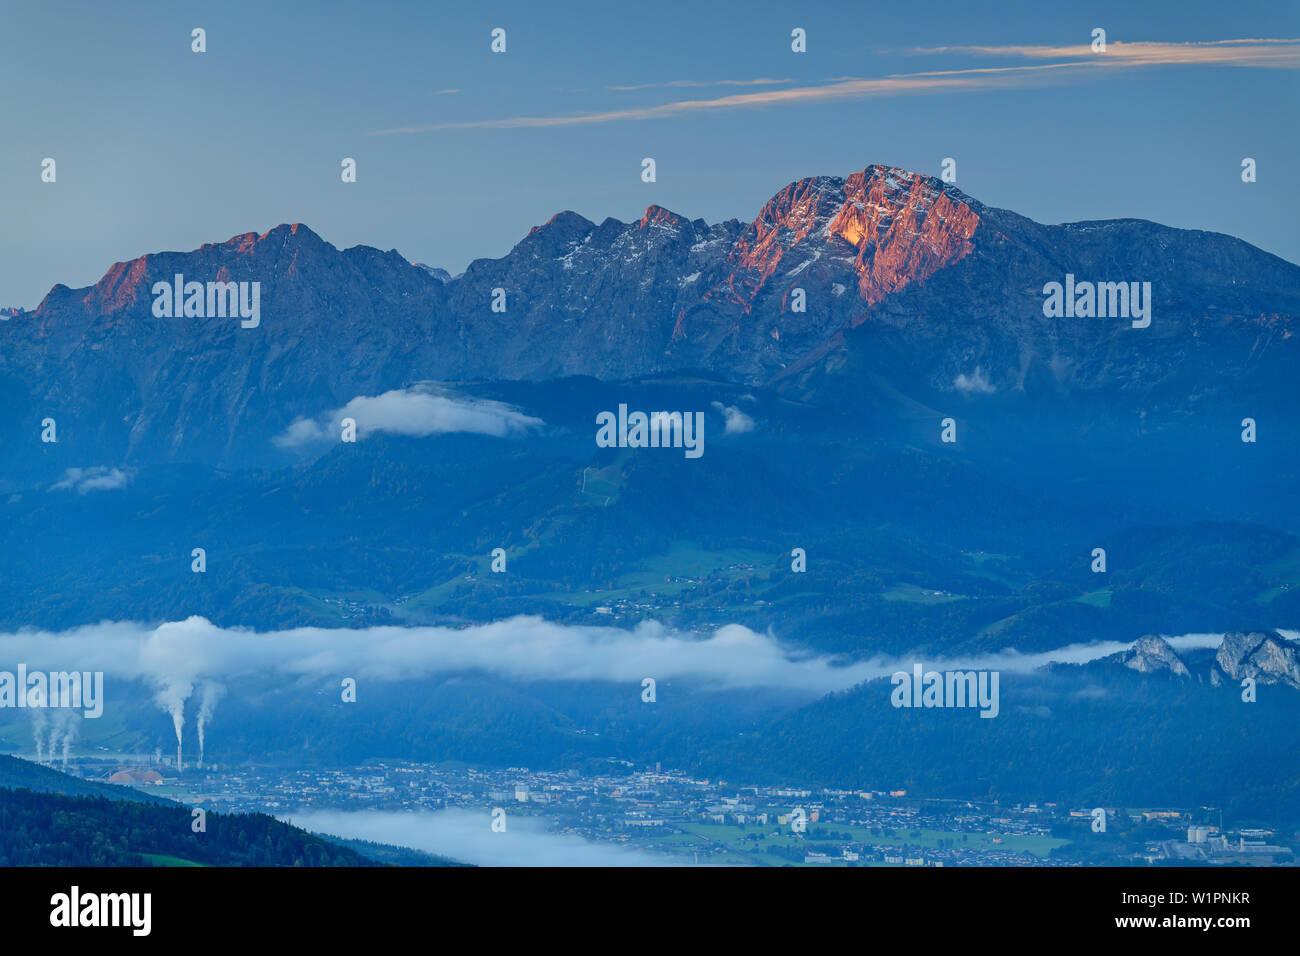 Valley of Salzach with Hallein, Hoher Goell in background, from Gaisberg, Salzkammergut, Salzburg, Austria Stock Photo